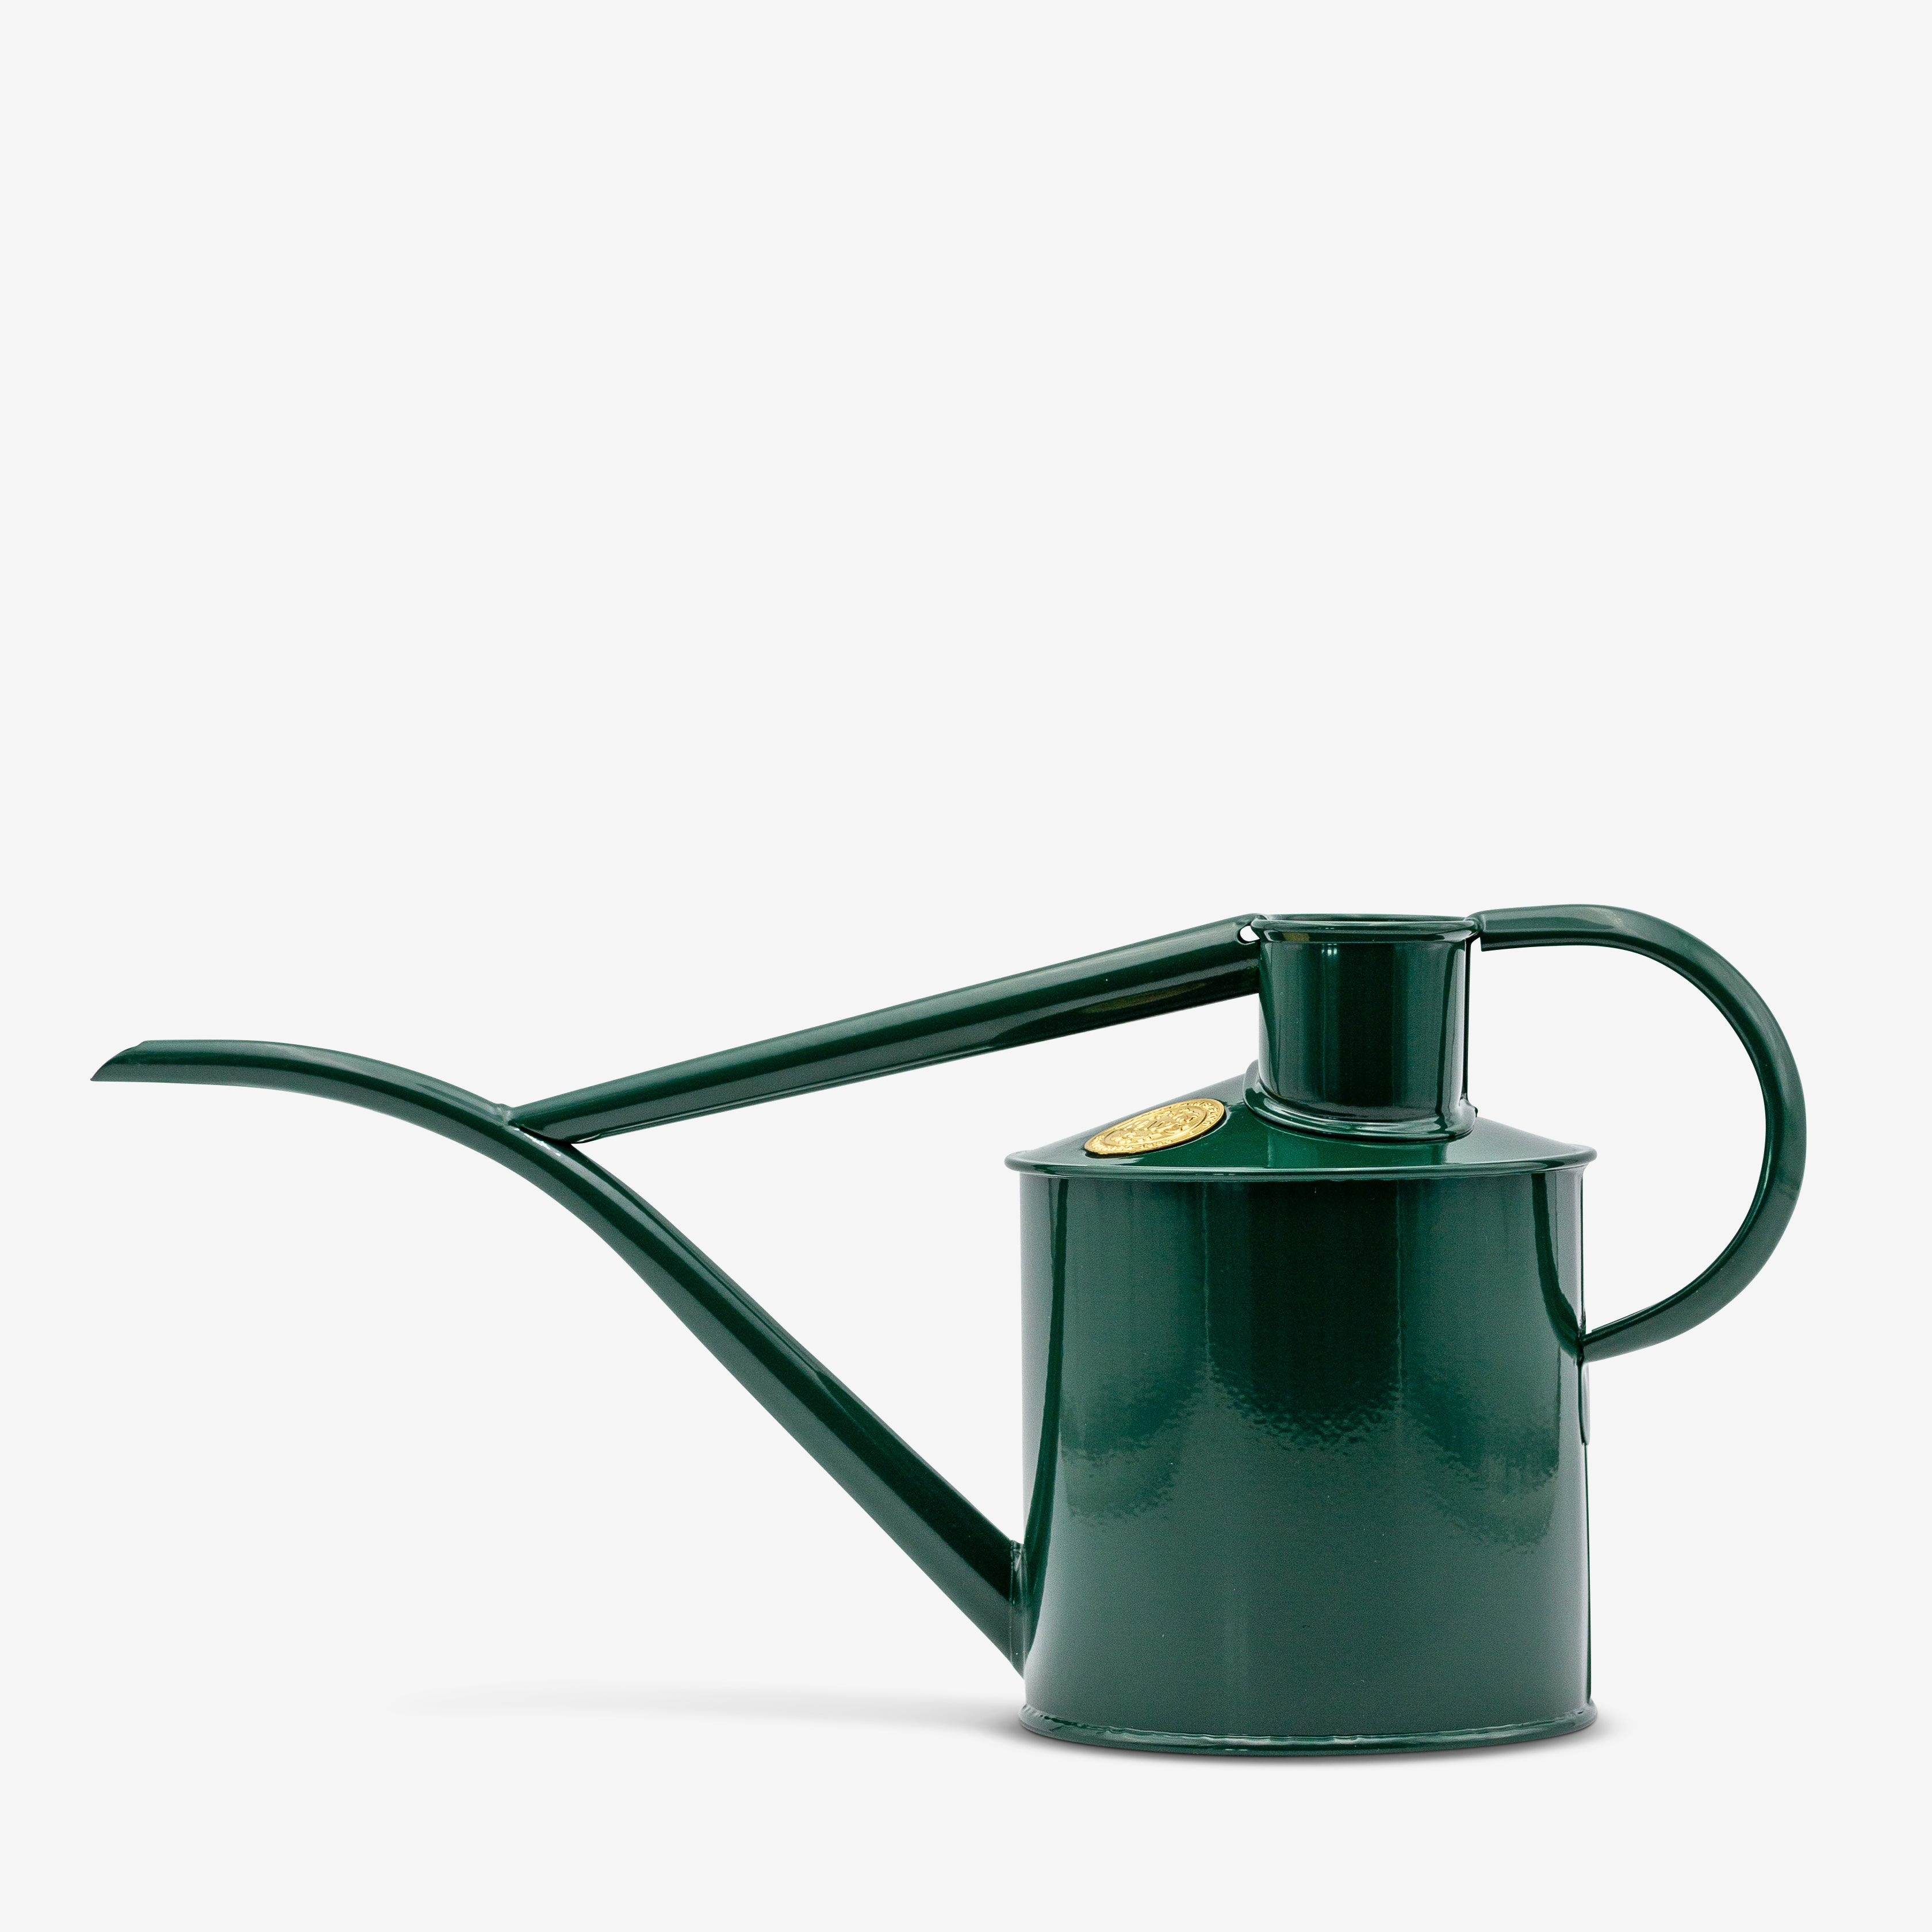 green metal indoor watering can